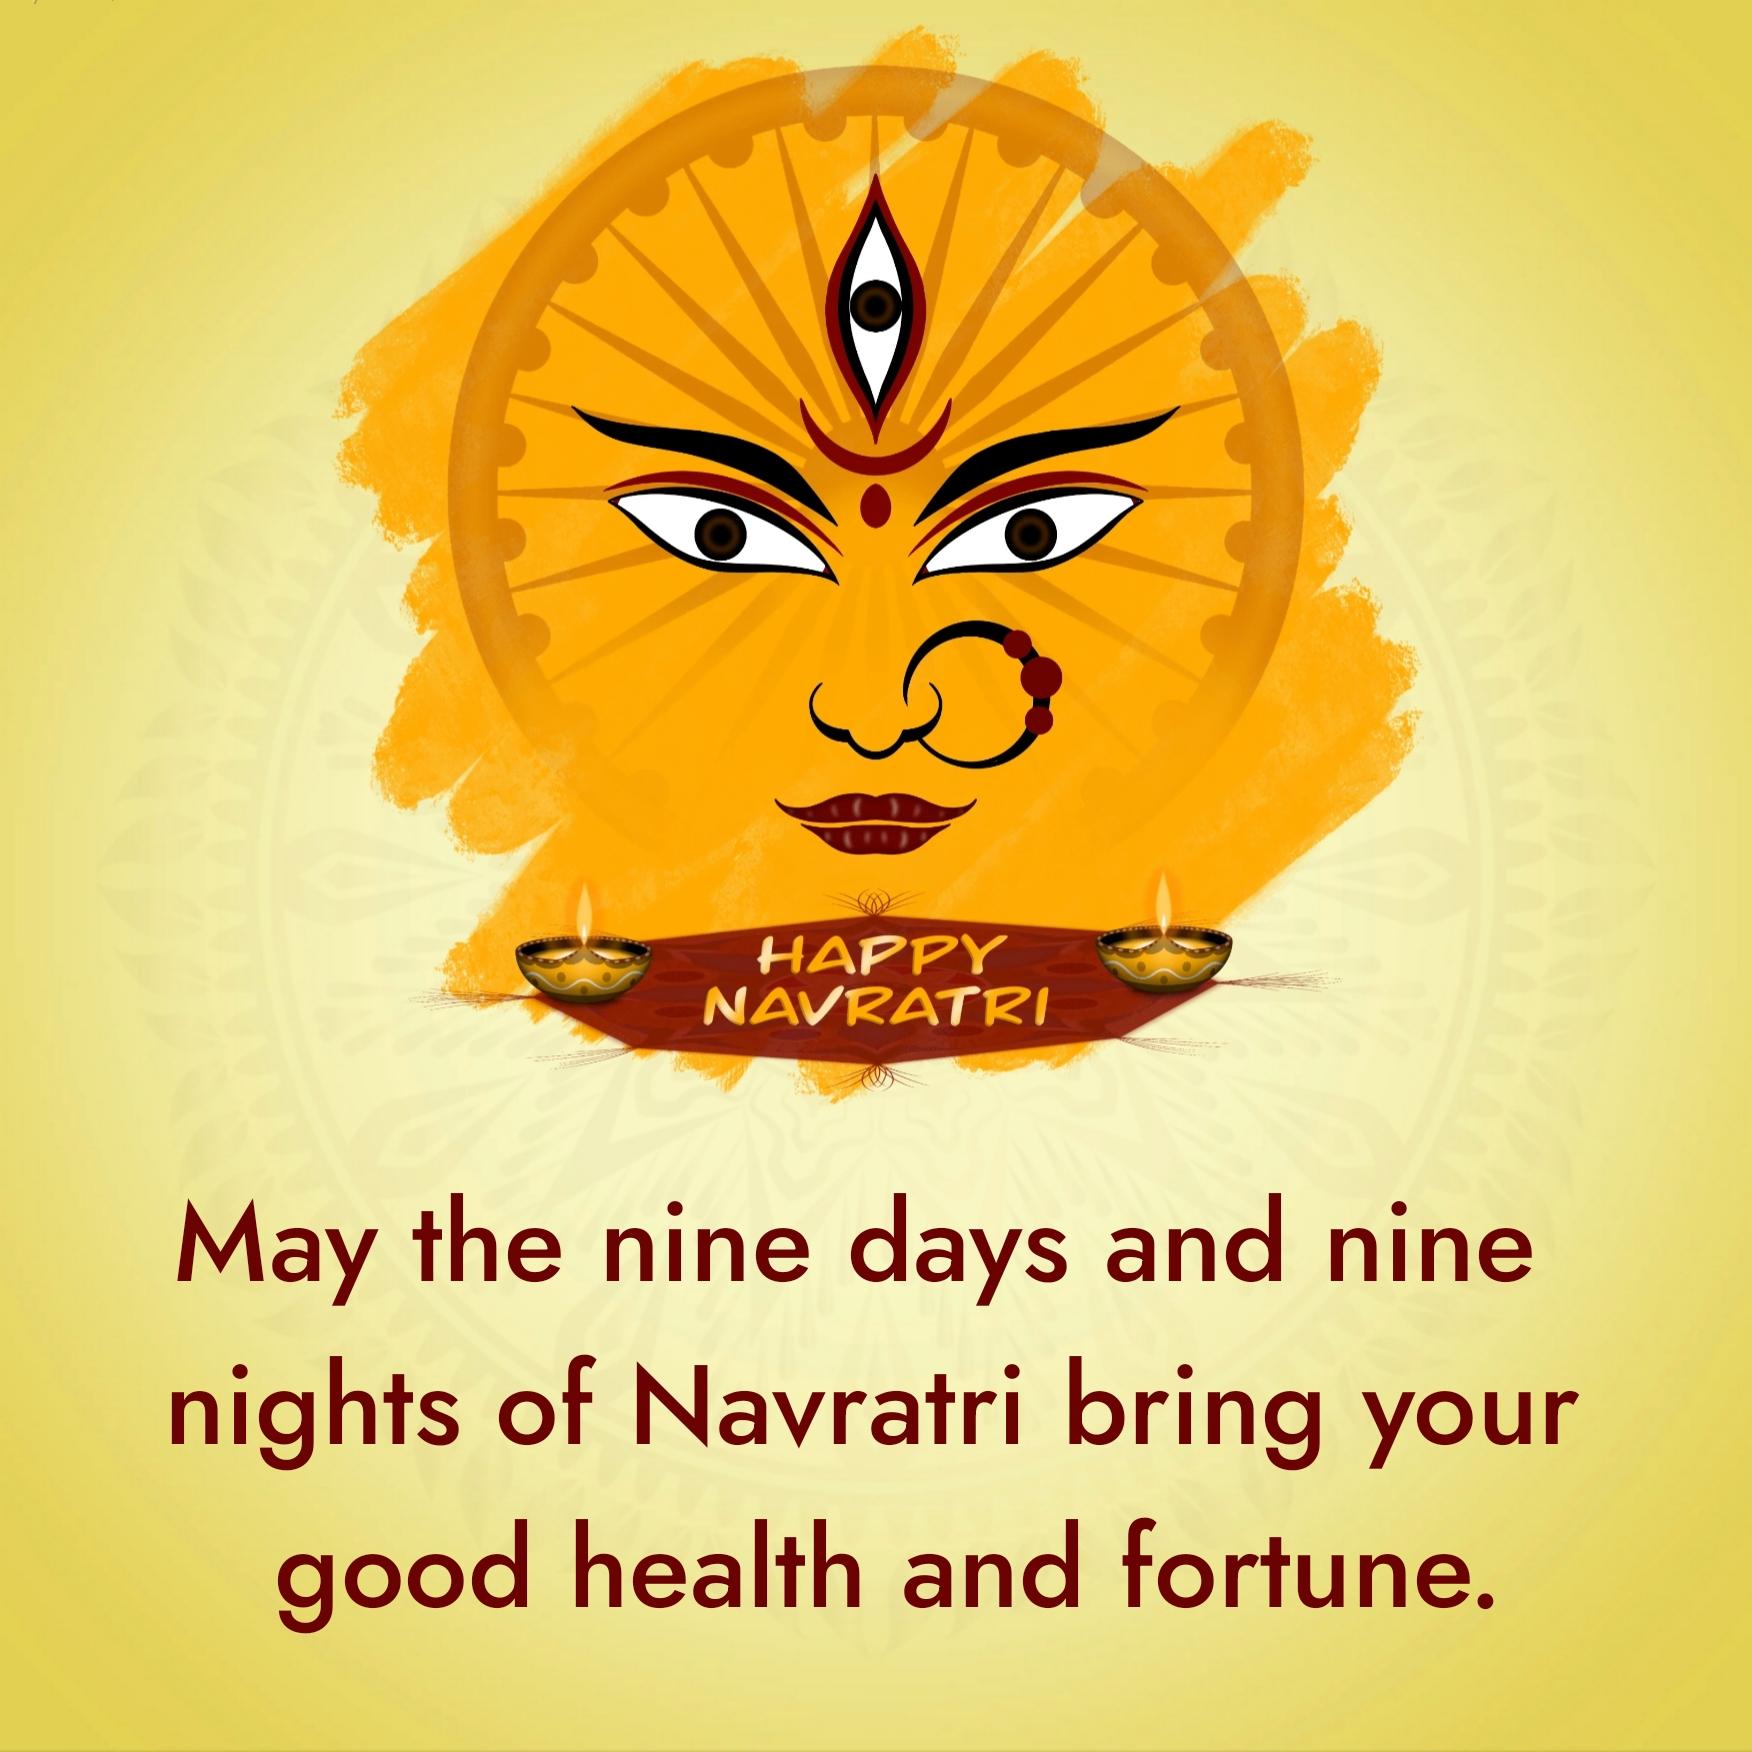 May the nine days and nine nights of Navratri